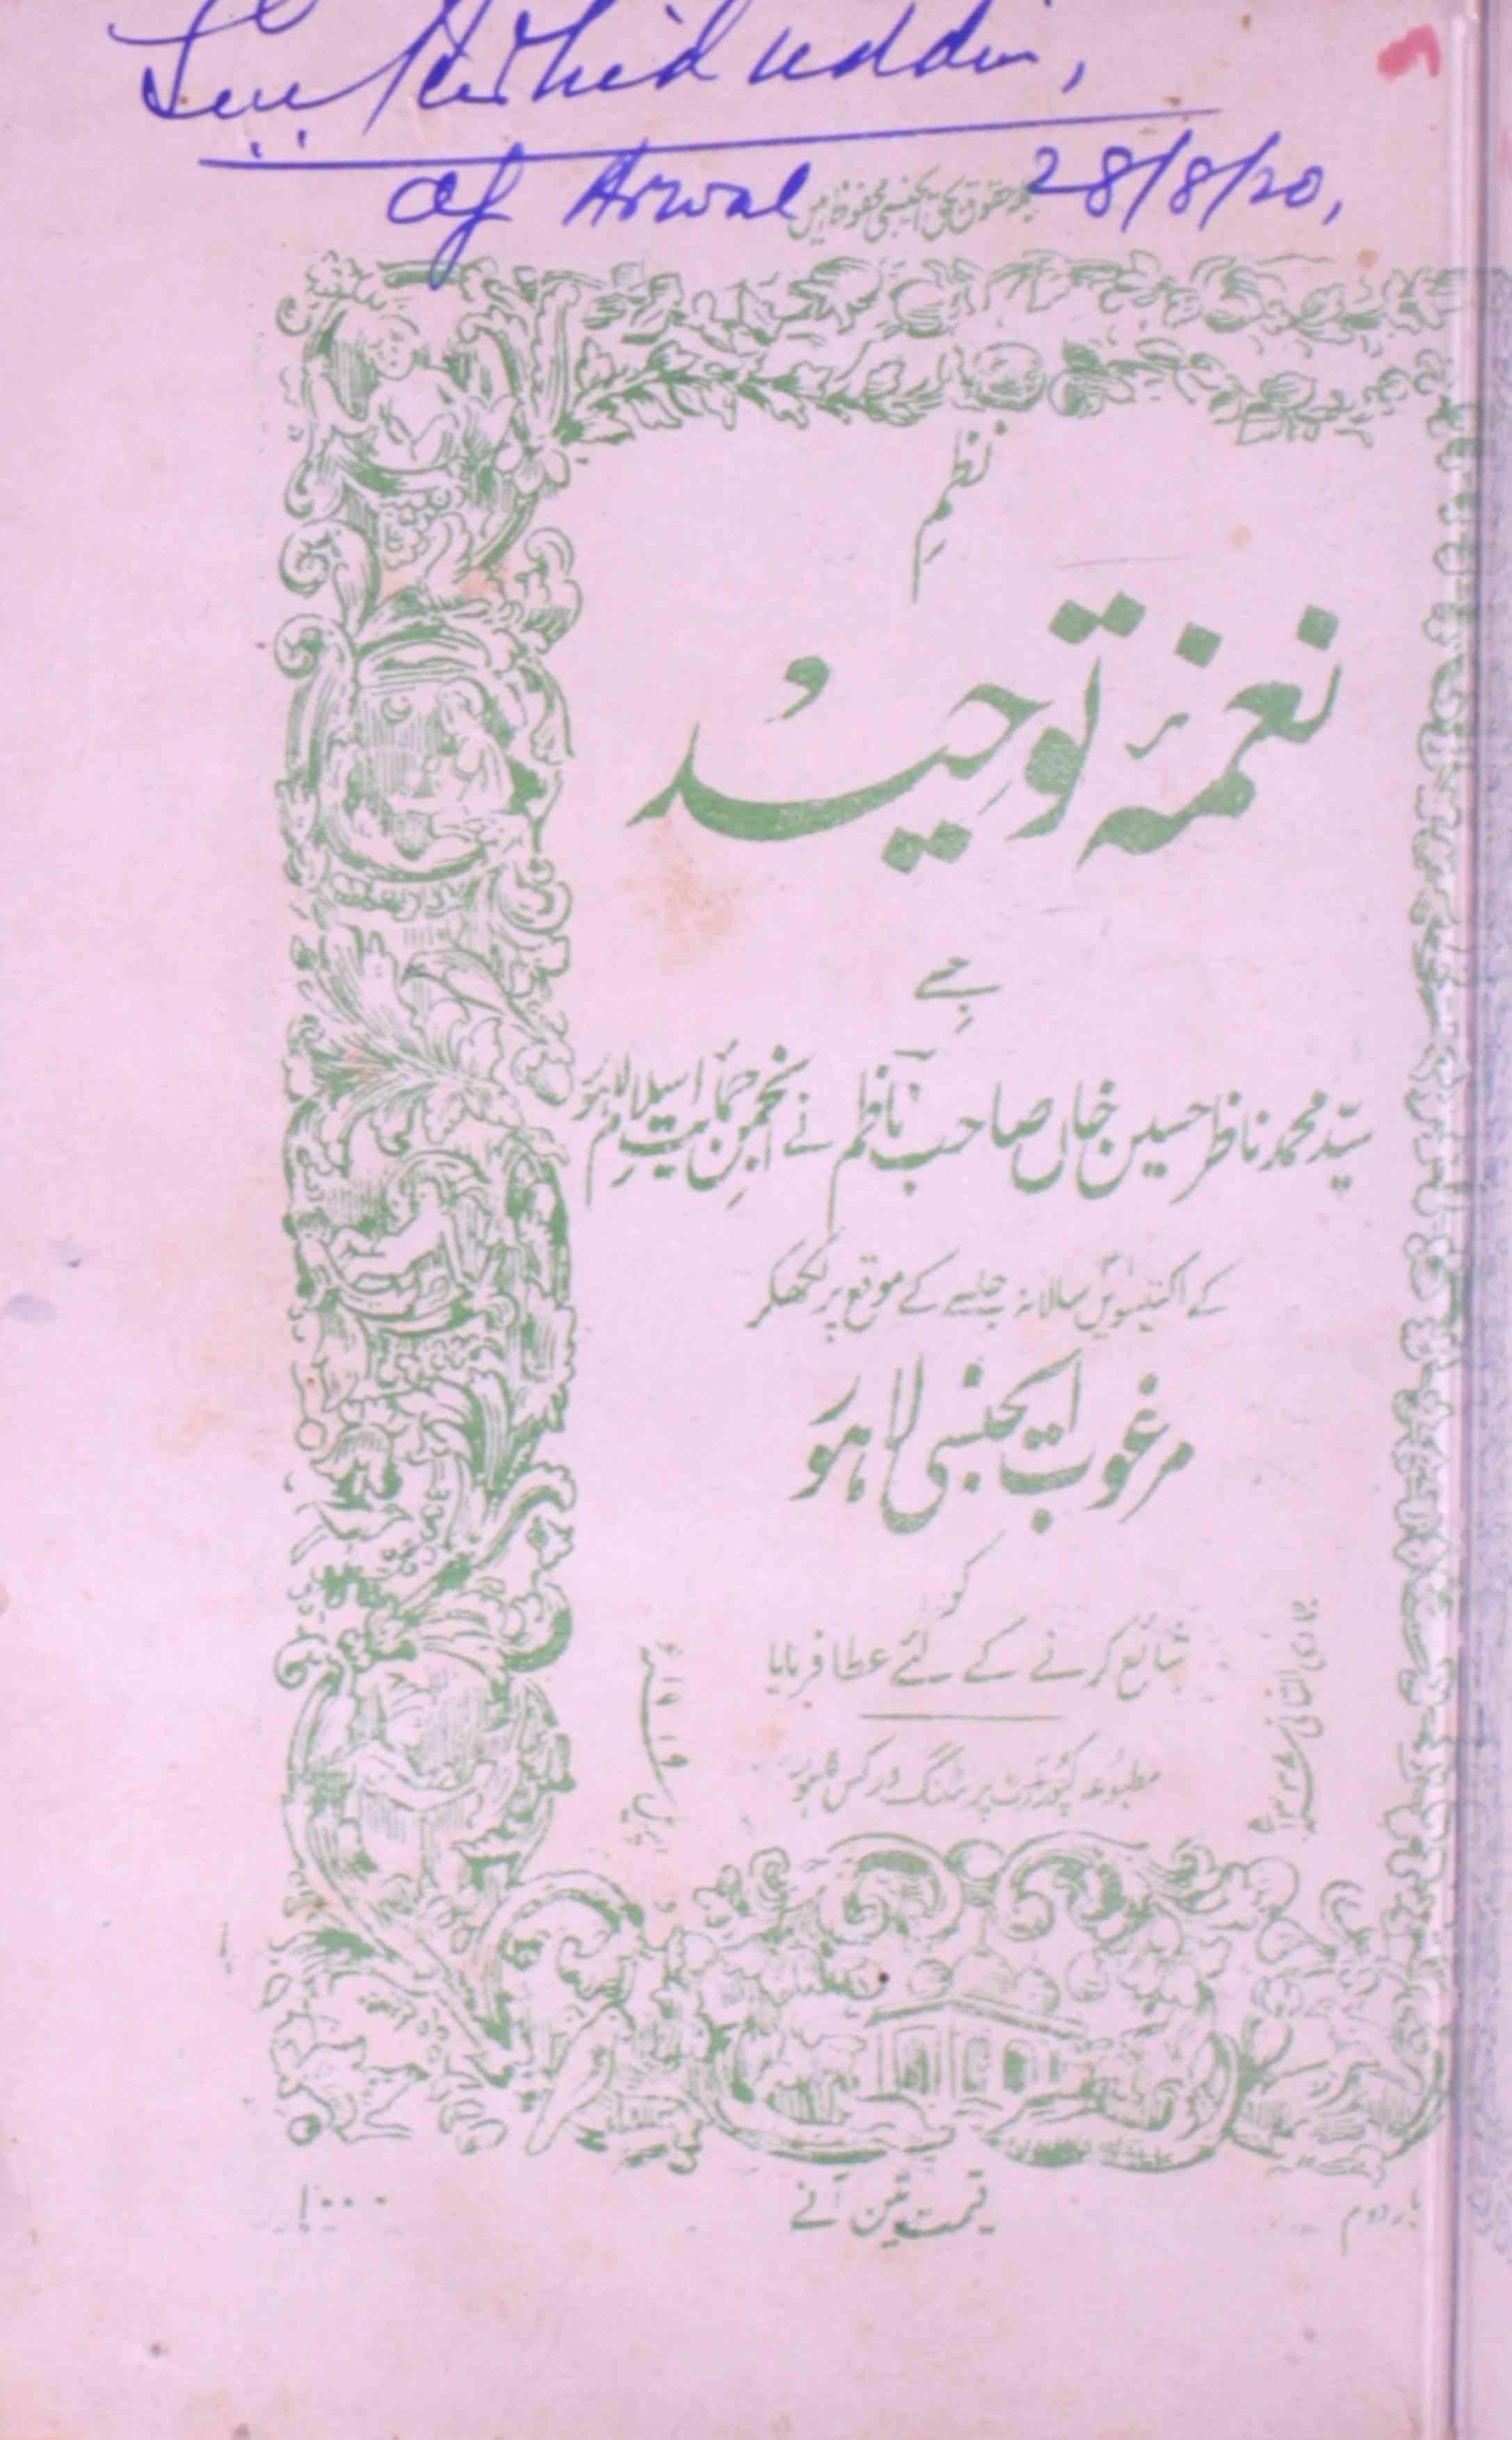 Naghma-e-Tauheed